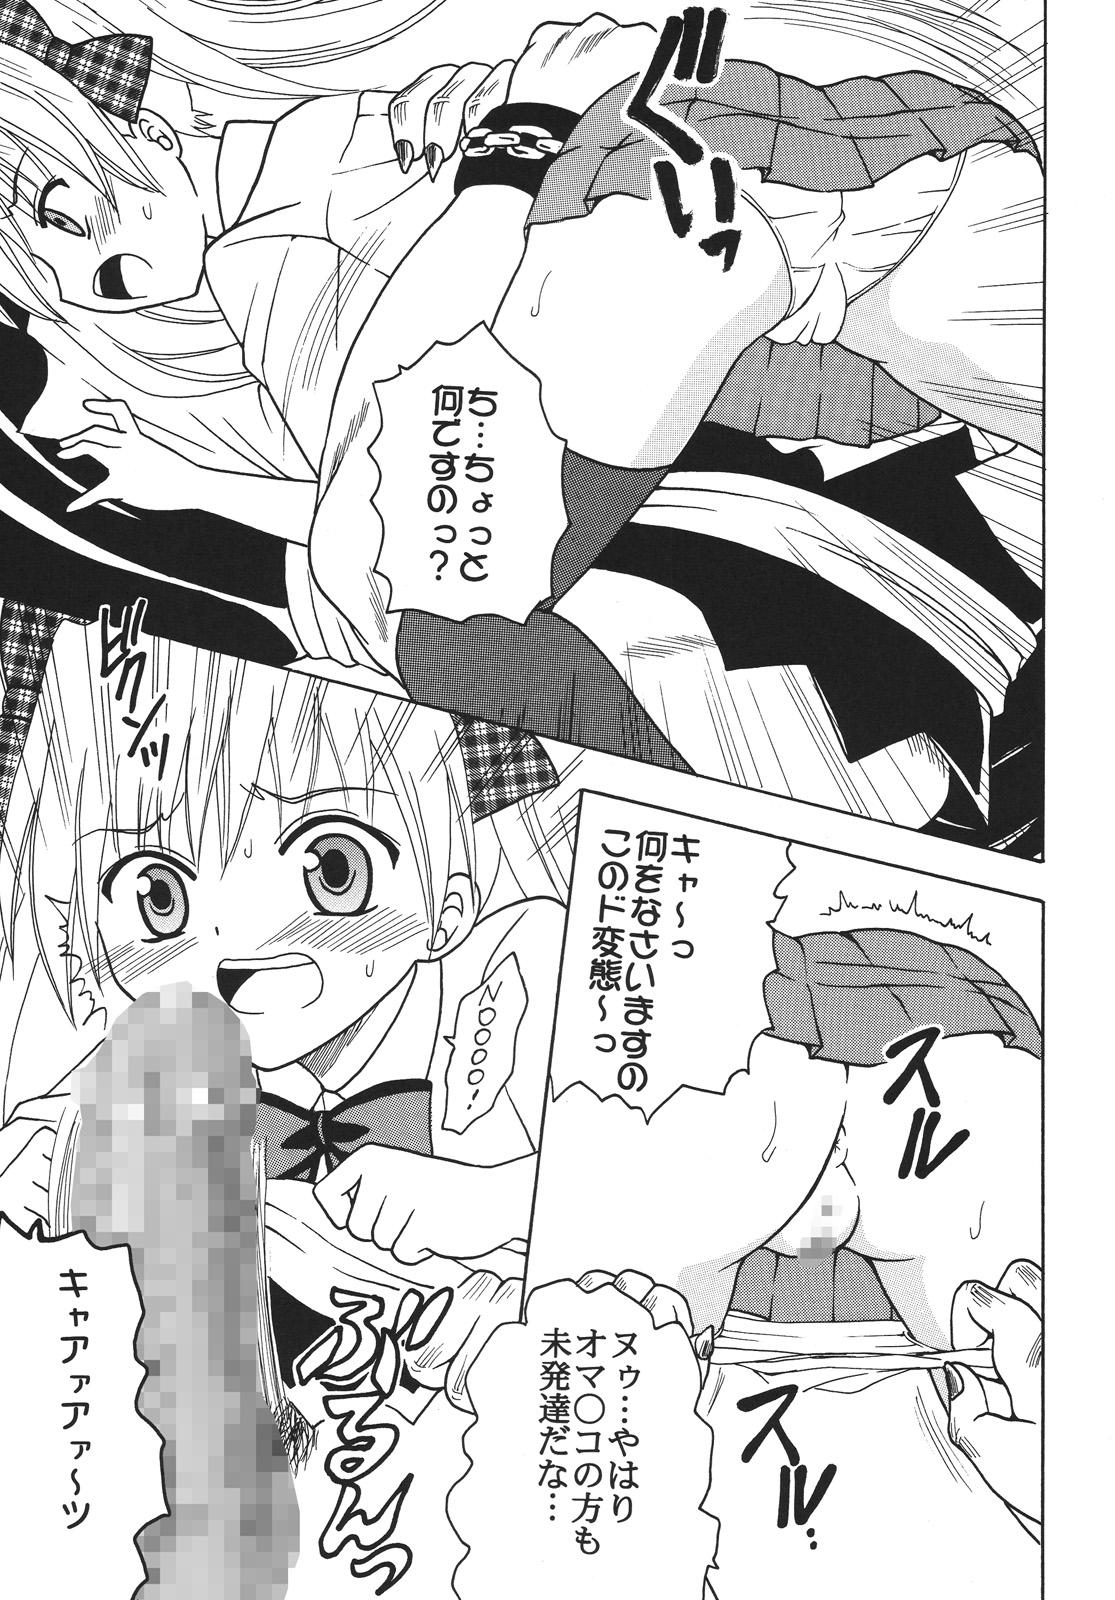 Toy Nakadashi Maid no Hinkaku 3 - Kamen no maid guy Ecuador - Page 6